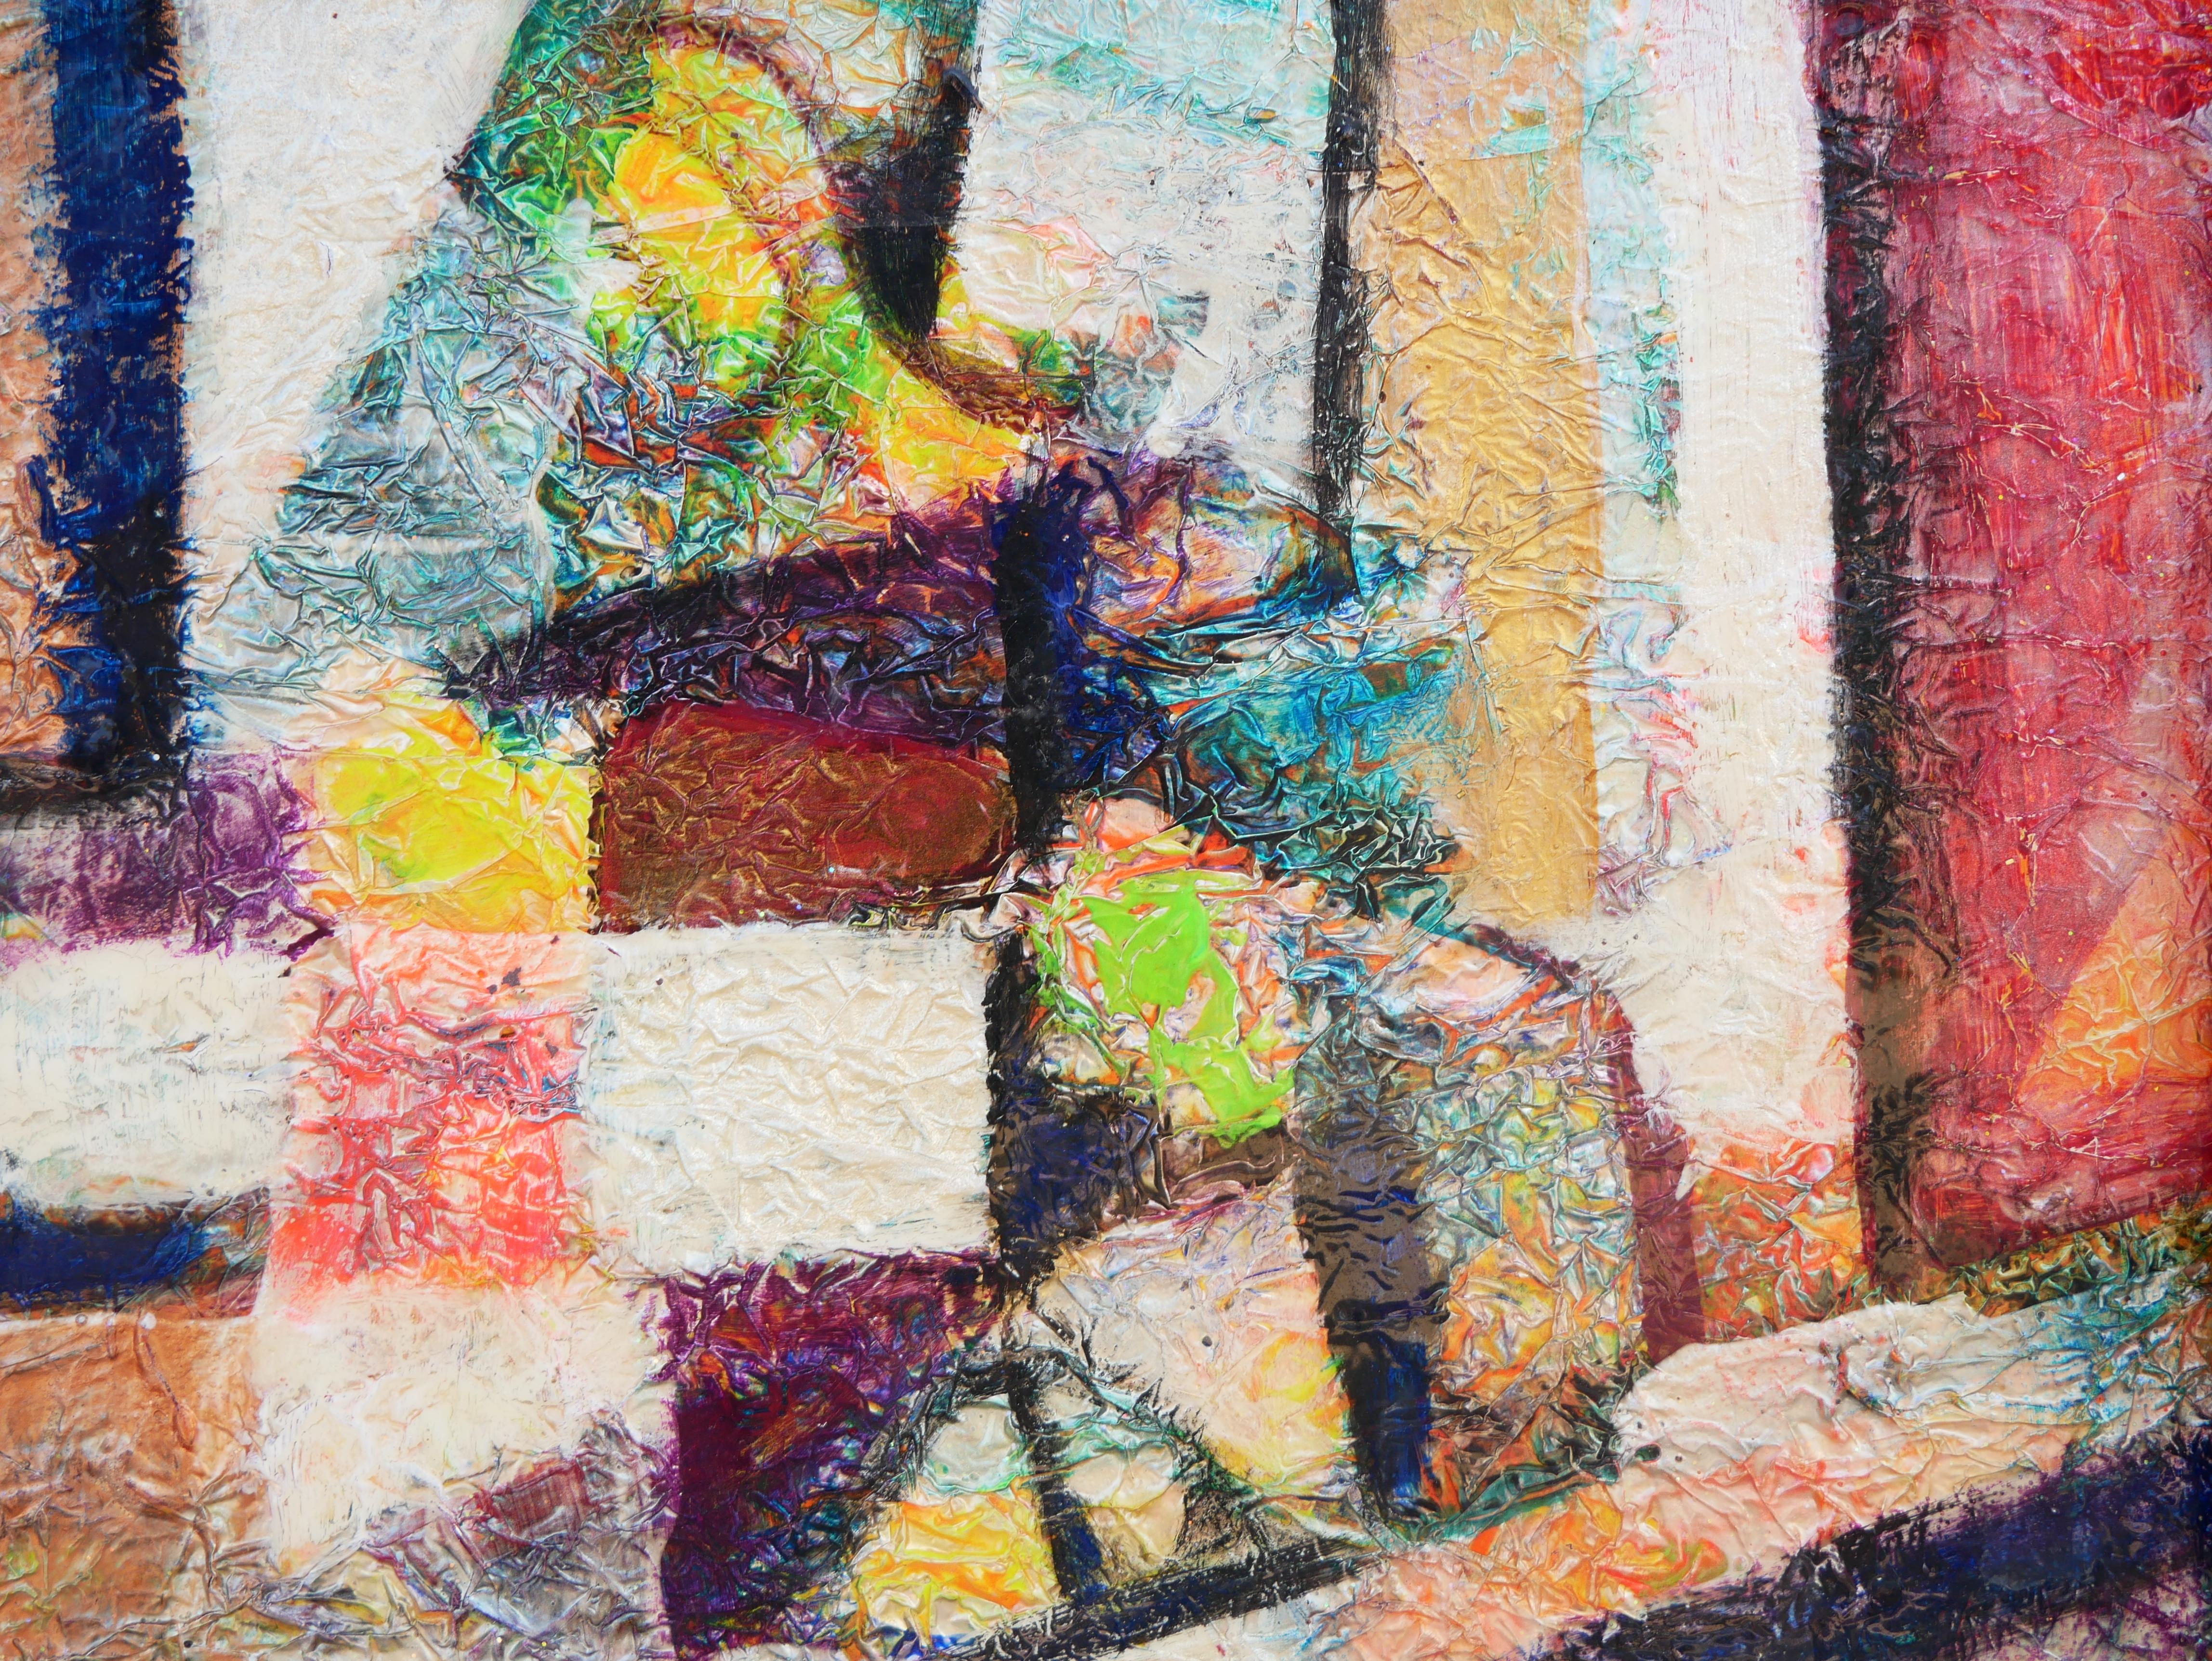 Peinture abstraite moderne réalisée par l'artiste David Adickes, de Houston, au Texas. L'œuvre présente une composition abstraite d'inspiration cubiste aux tons rouge, orange et jaune. Signé par l'artiste dans le coin inférieur gauche. Actuellement